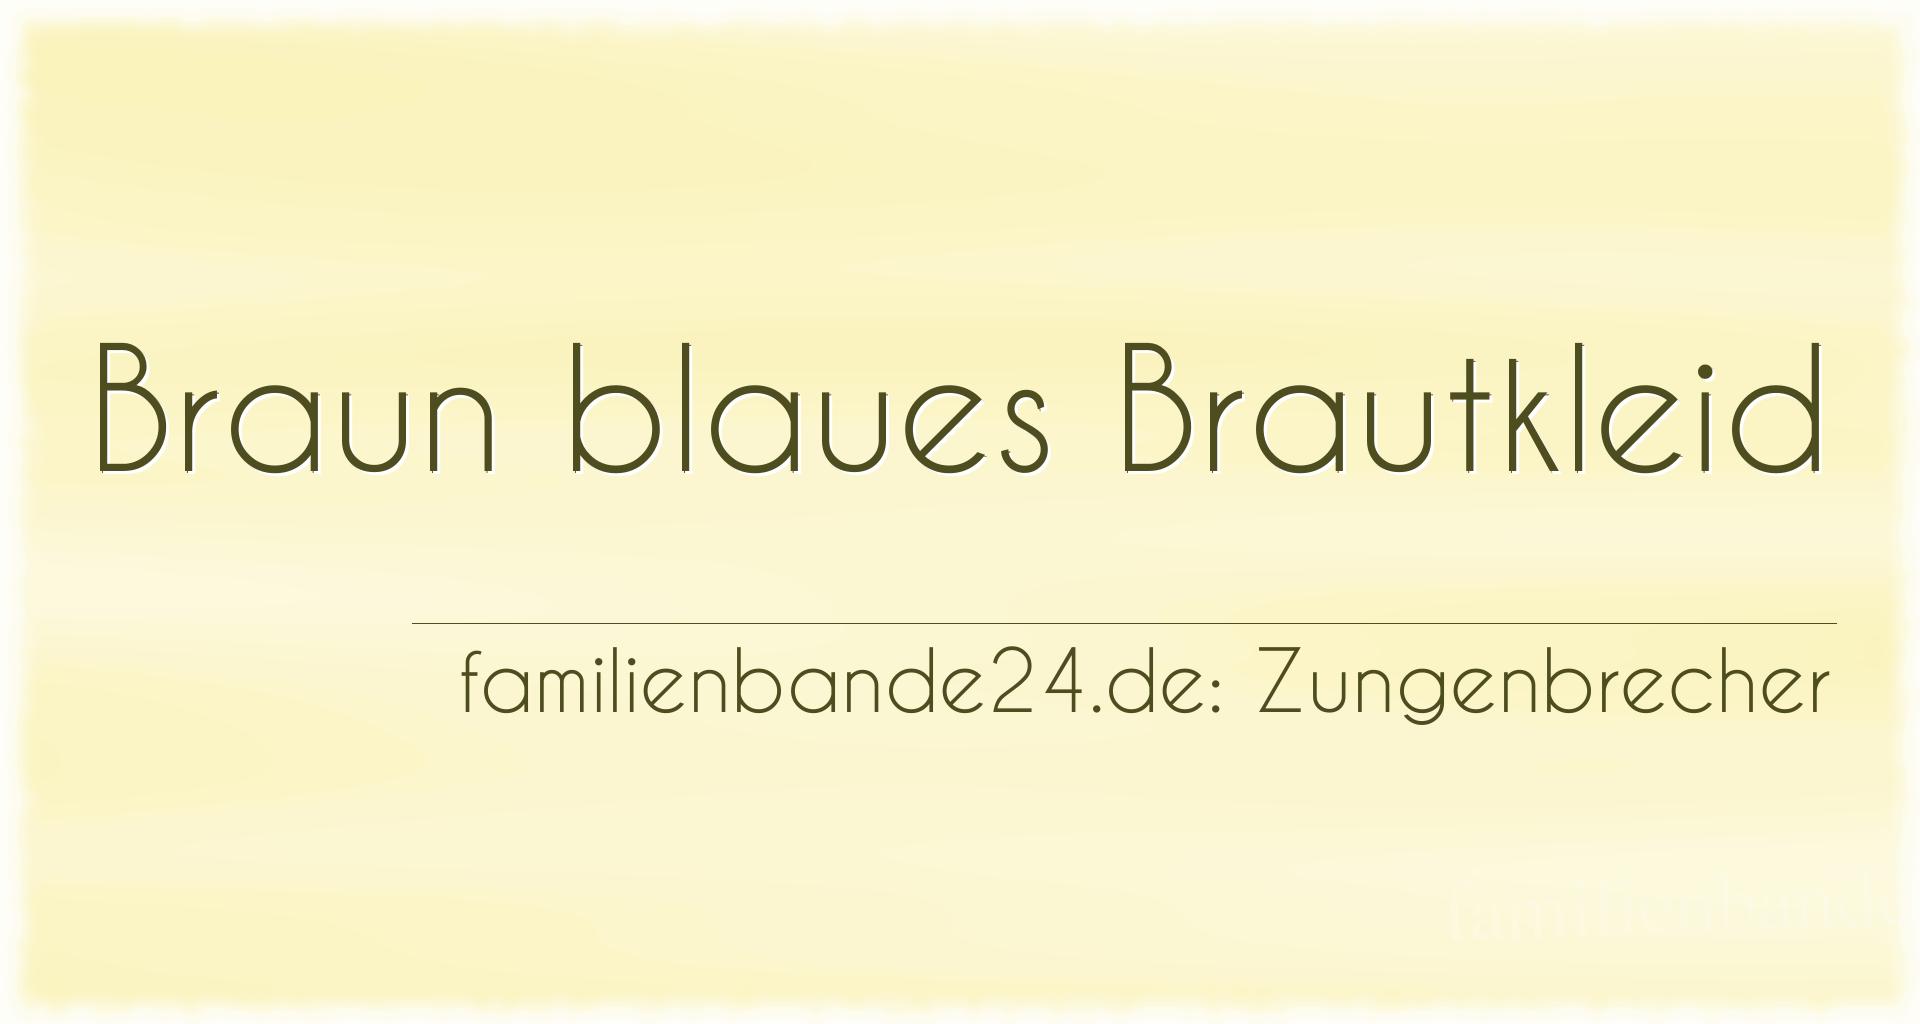 Zungenbrecher Nr. 689: Braun blaues Brautkleid